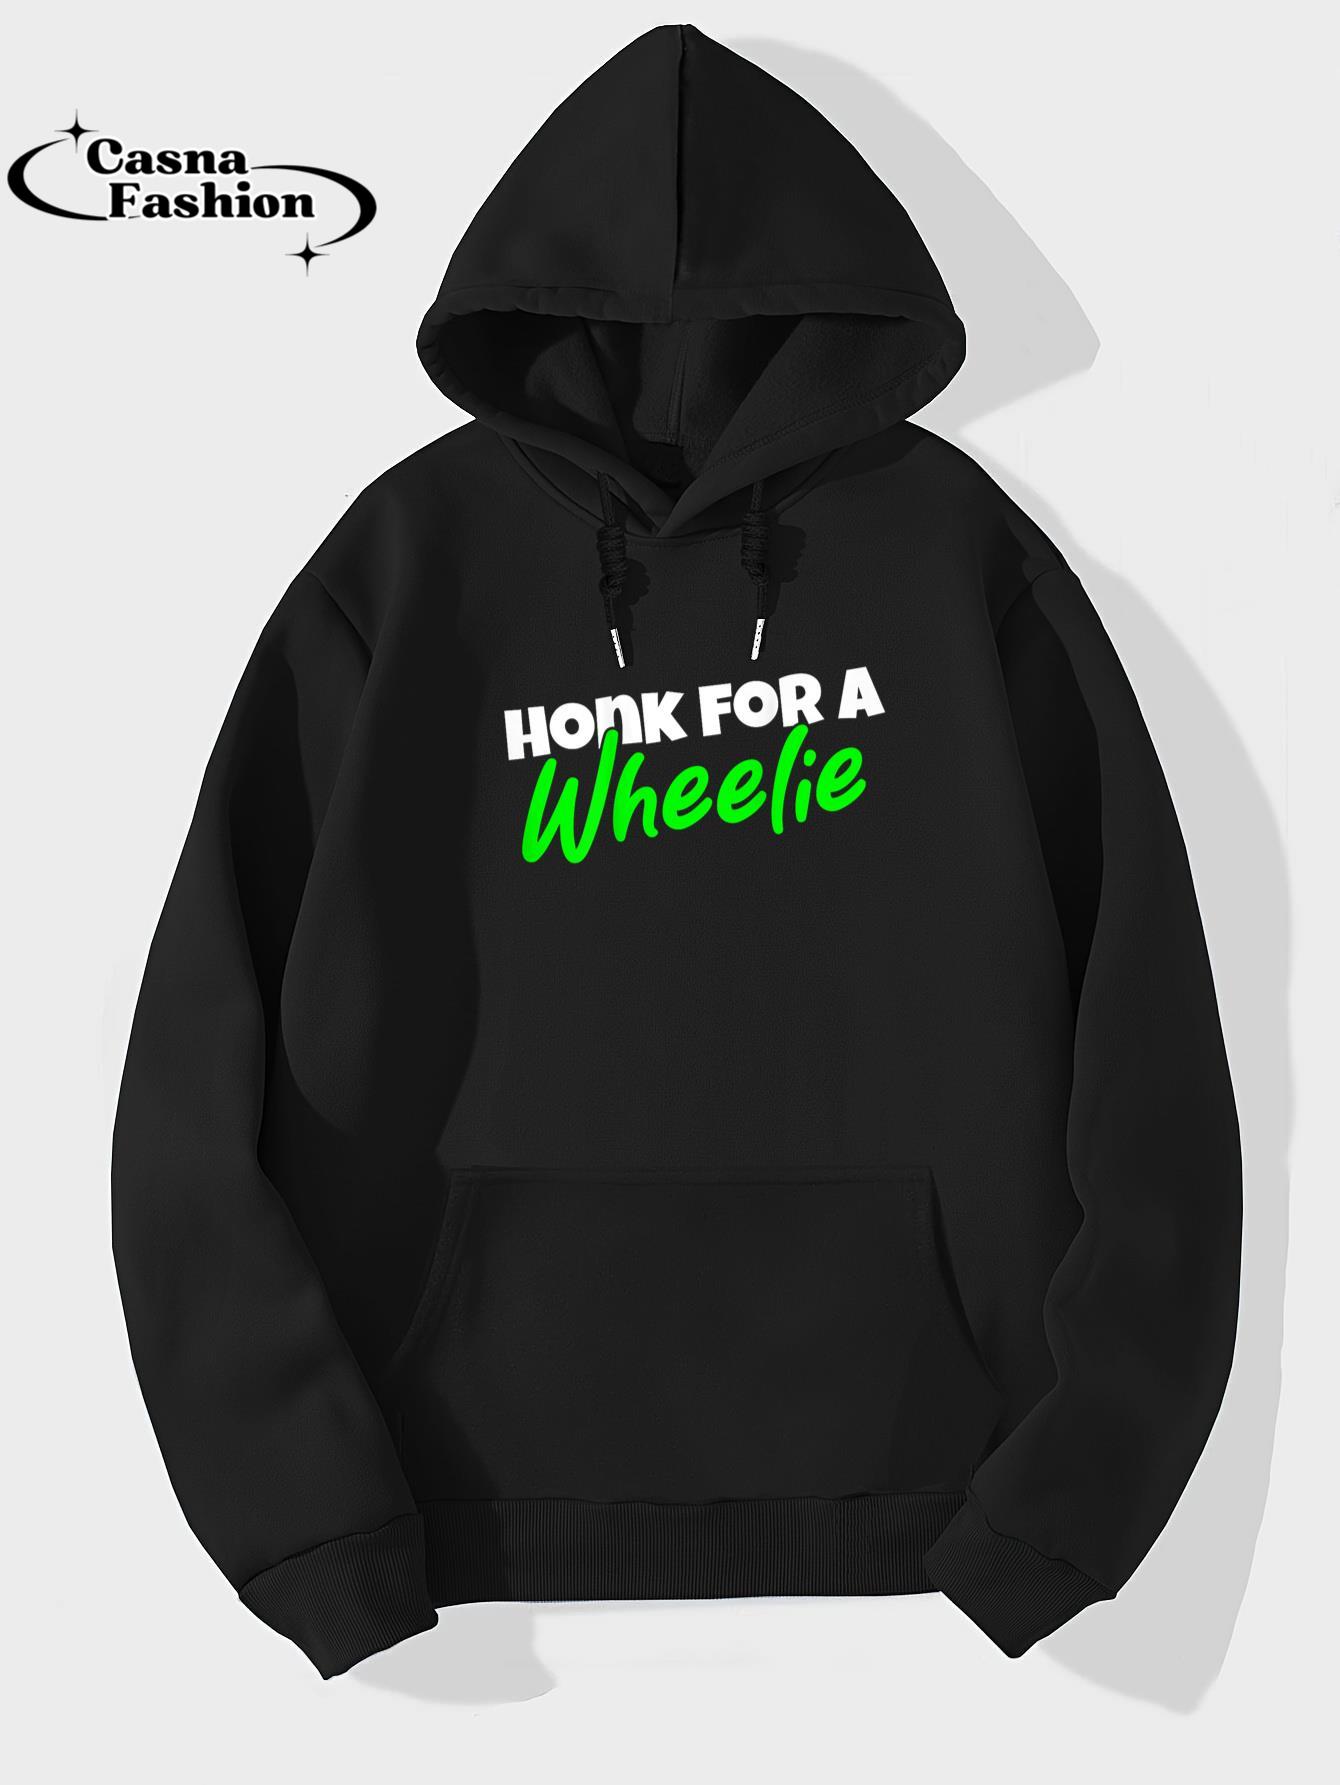 casnafashion_Hoodie_Backprint Motorcycle Stunt Design Honk For Wheelie T-Shirt_hoodie_black hoodie